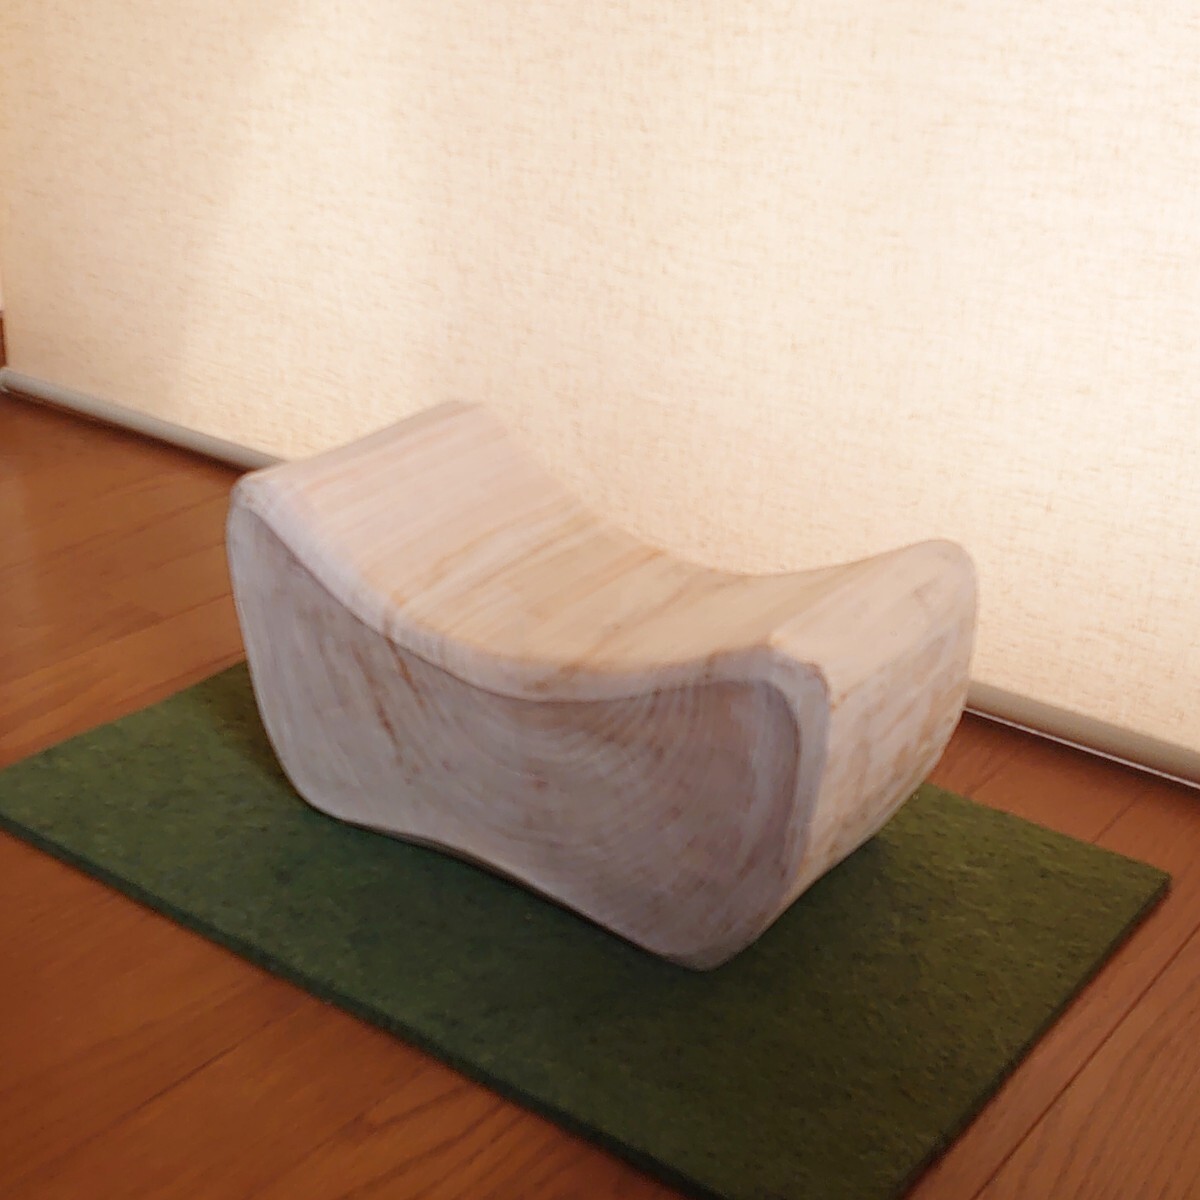 ひのき切株椅子 for kids・無垢無塗装・オーガニックの画像2